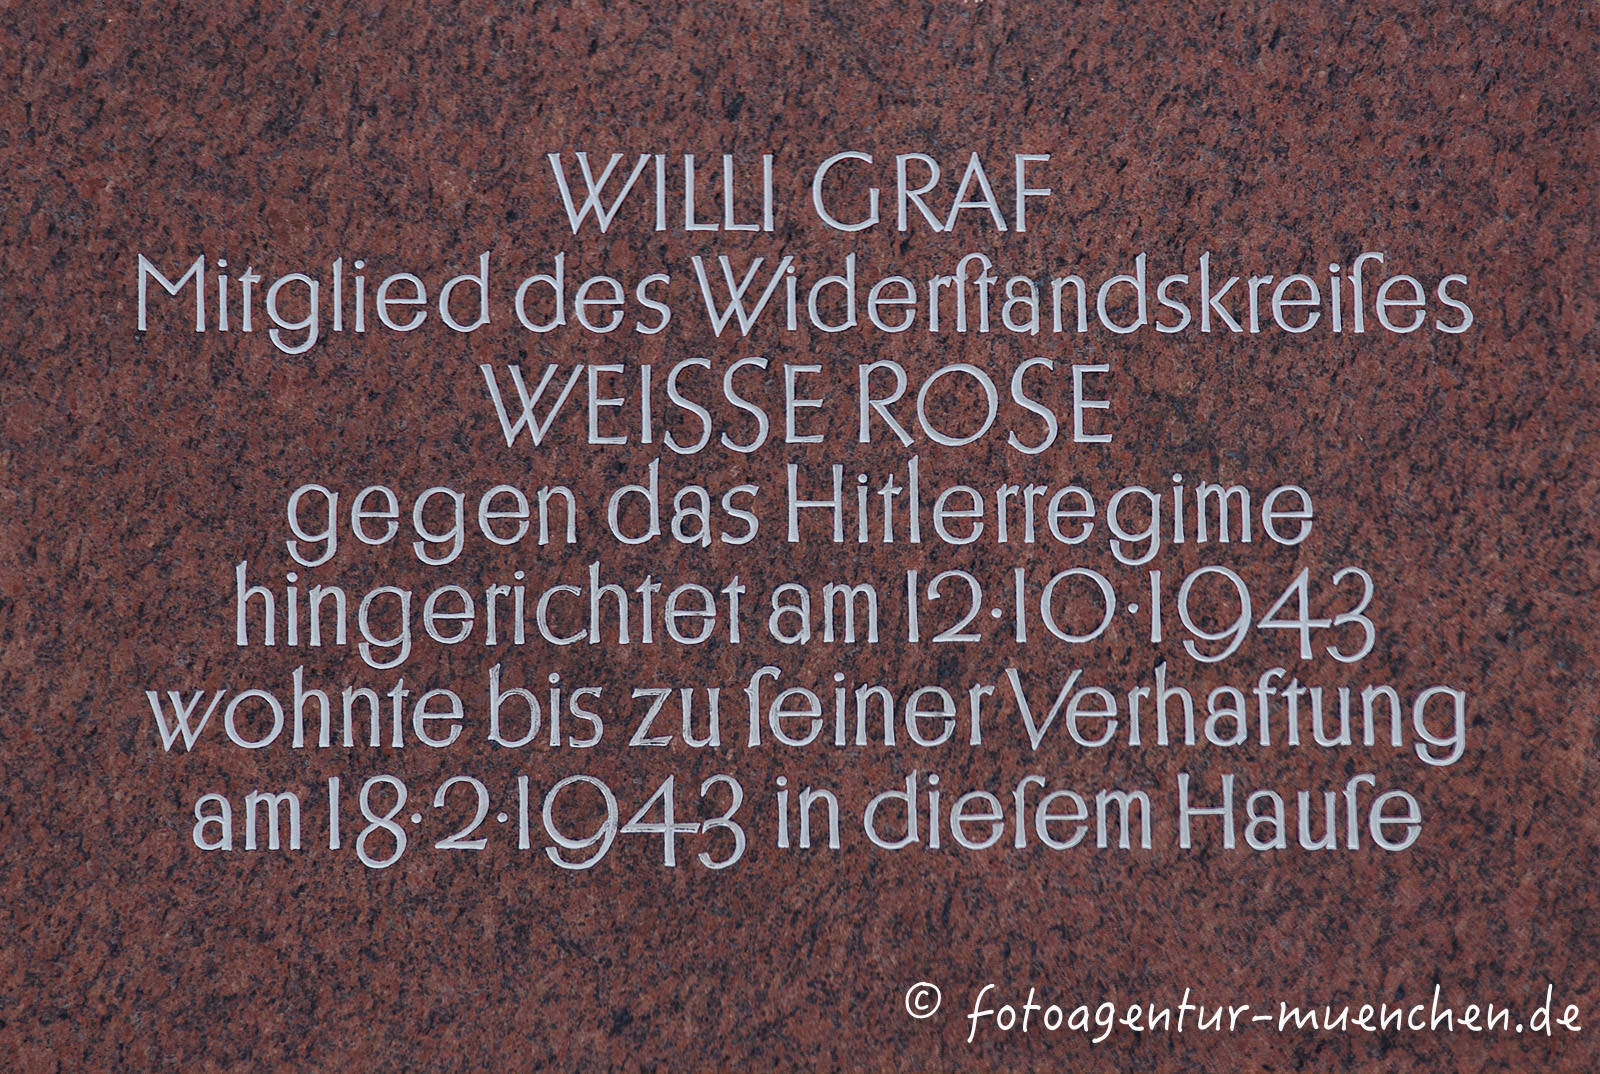 Gedenktafel für Graf Willi